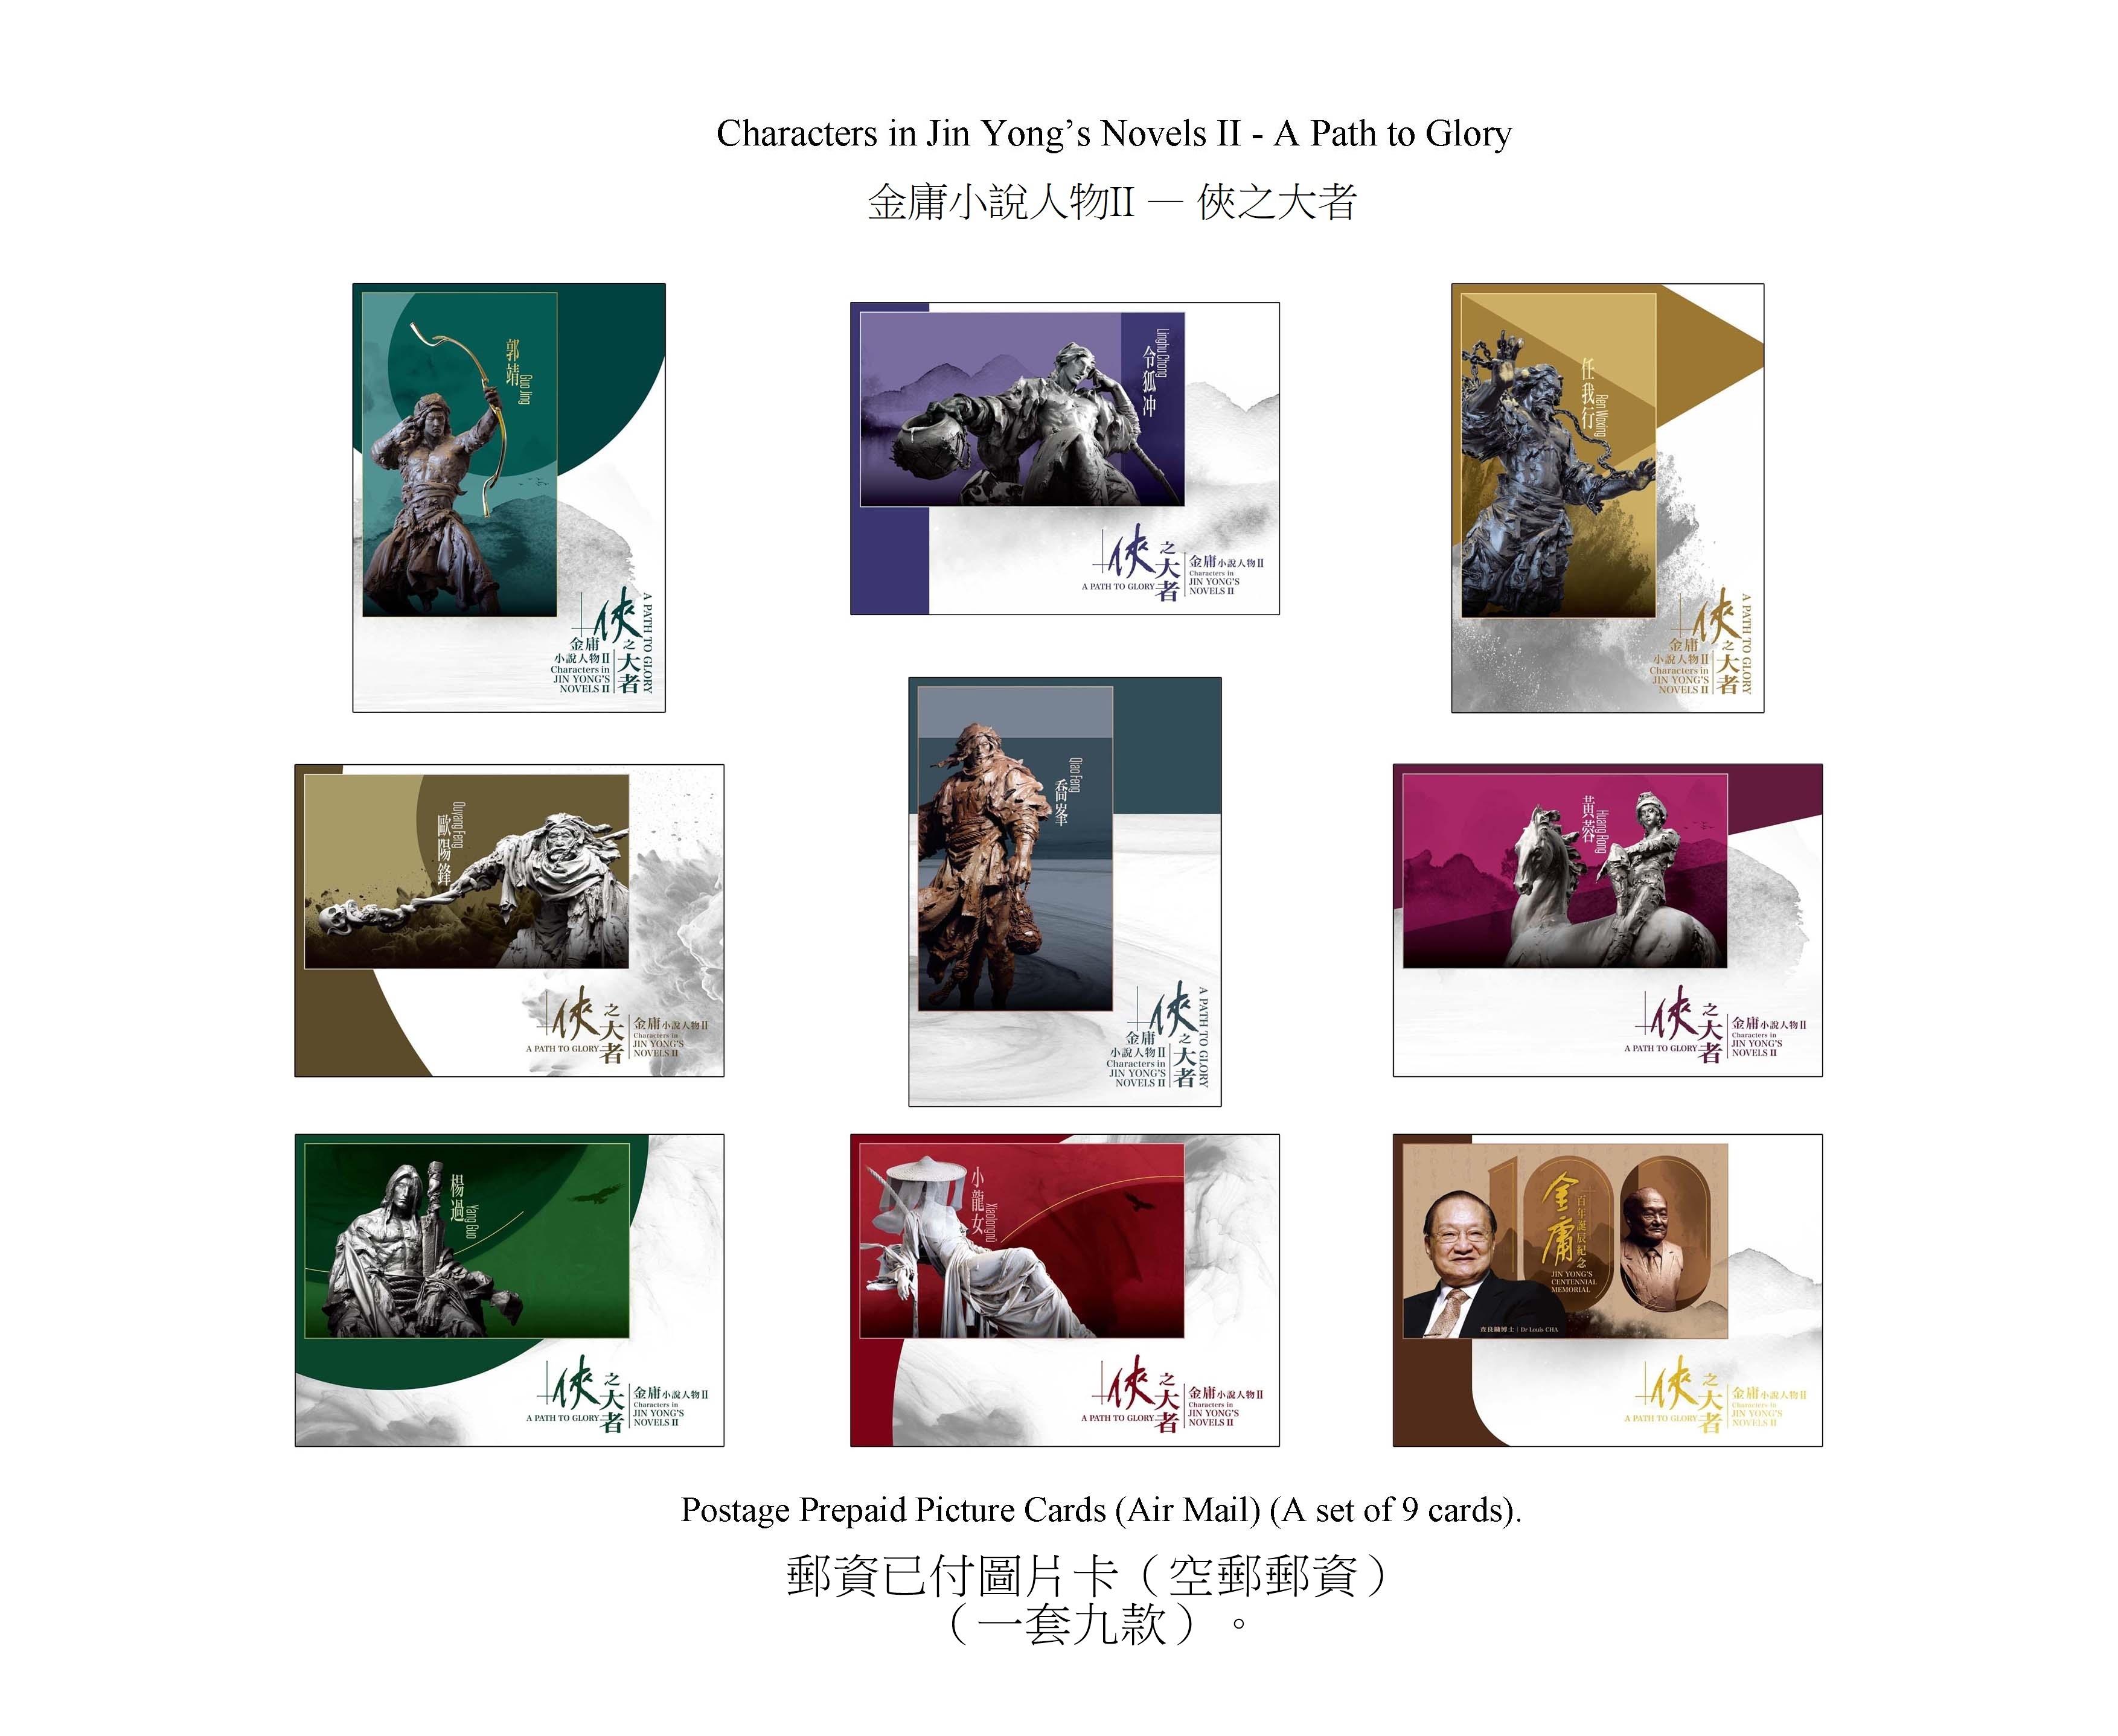 香港郵政三月十四日（星期四）發行以「金庸小說人物II──俠之大者」為題的特別郵票及相關集郵品。圖示郵資已付圖片卡（空郵郵資）。